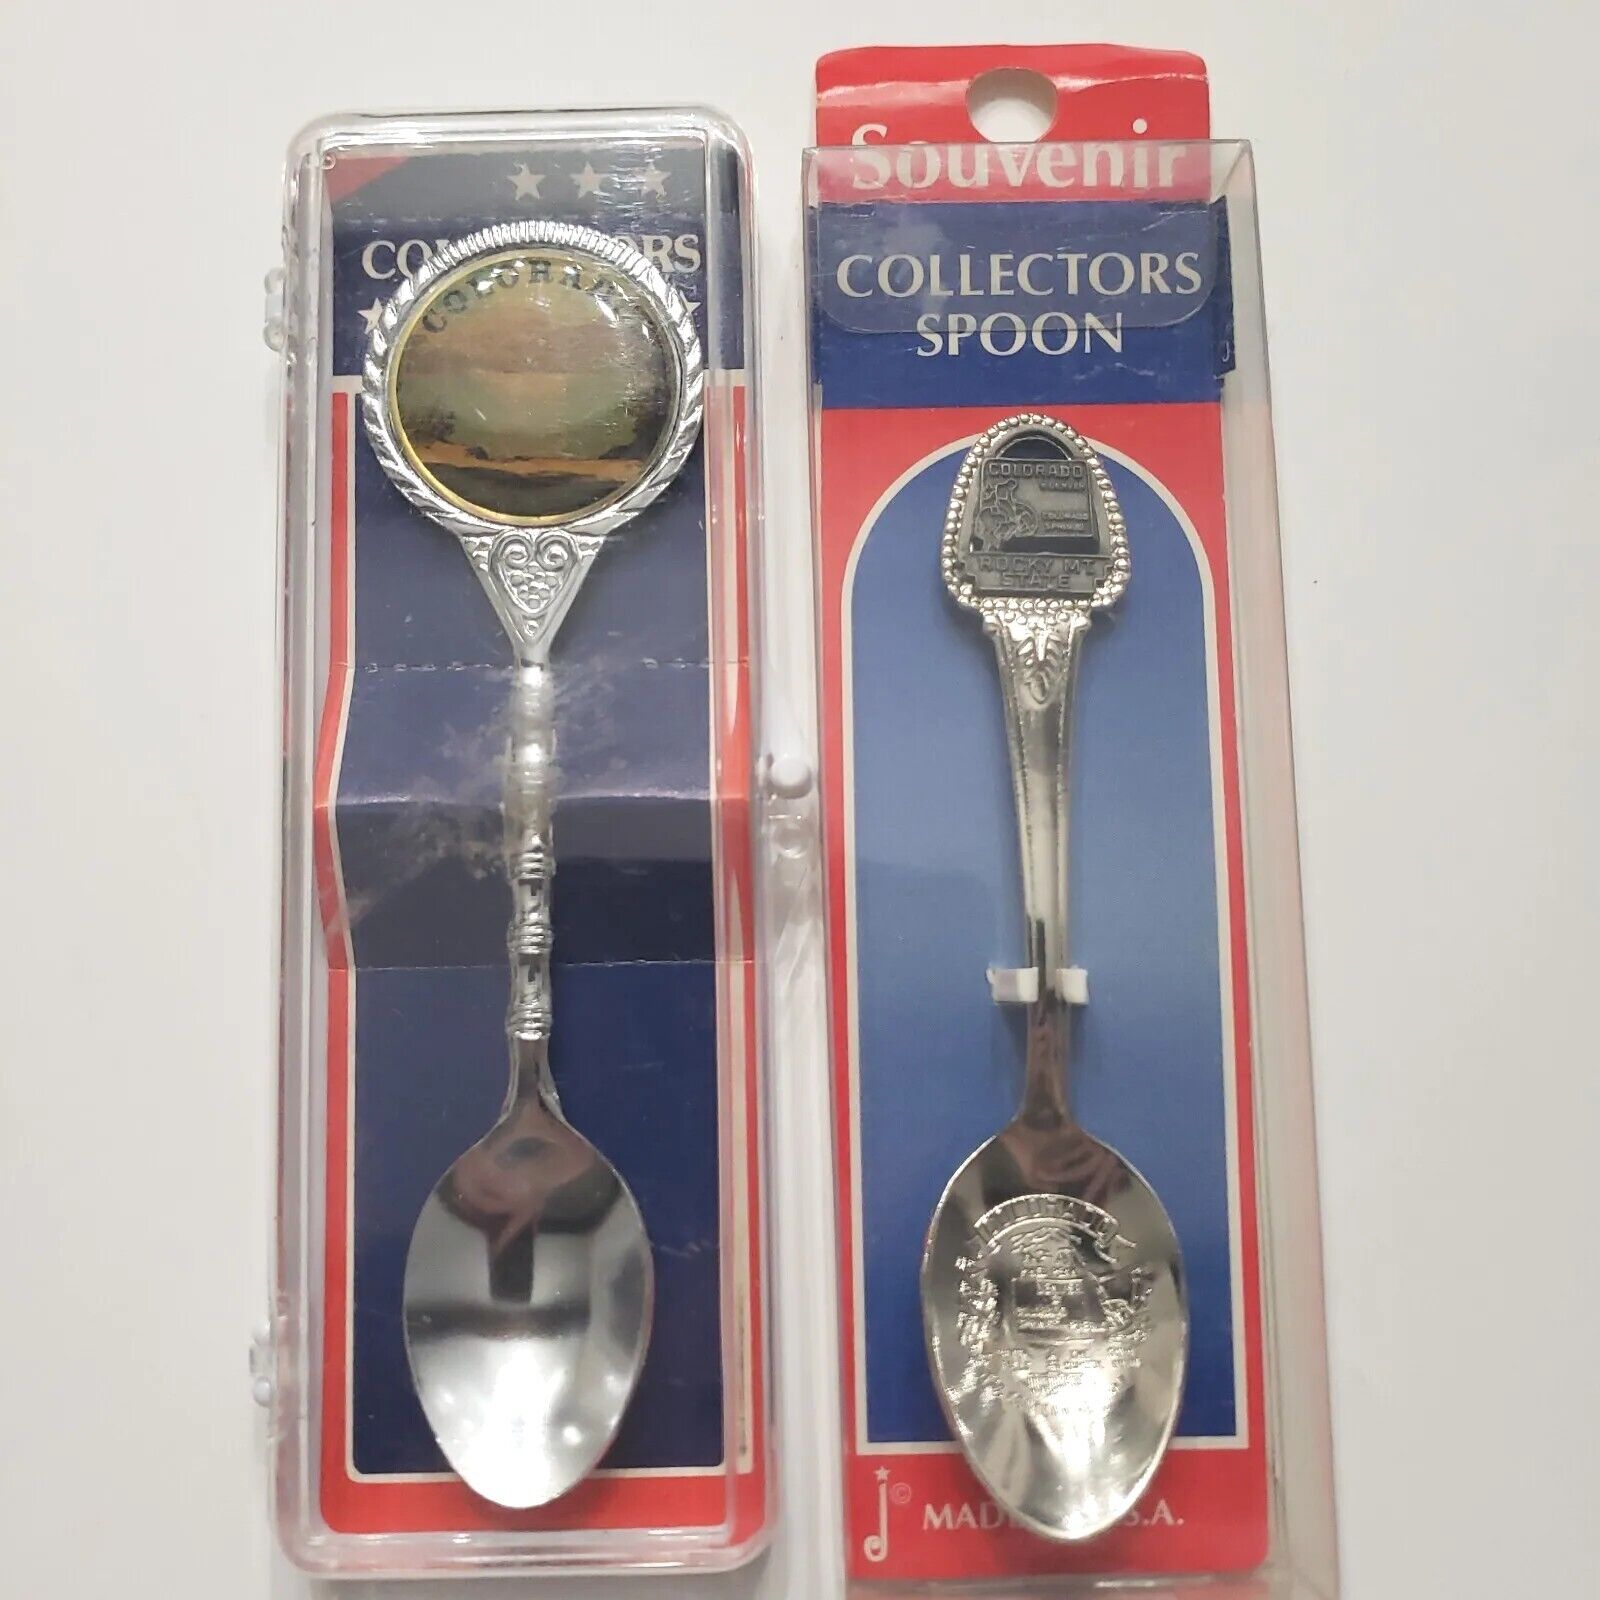 VTG Denver Colorado Souvenir Spoon Lot Made in USA Decorative Collectibles L167